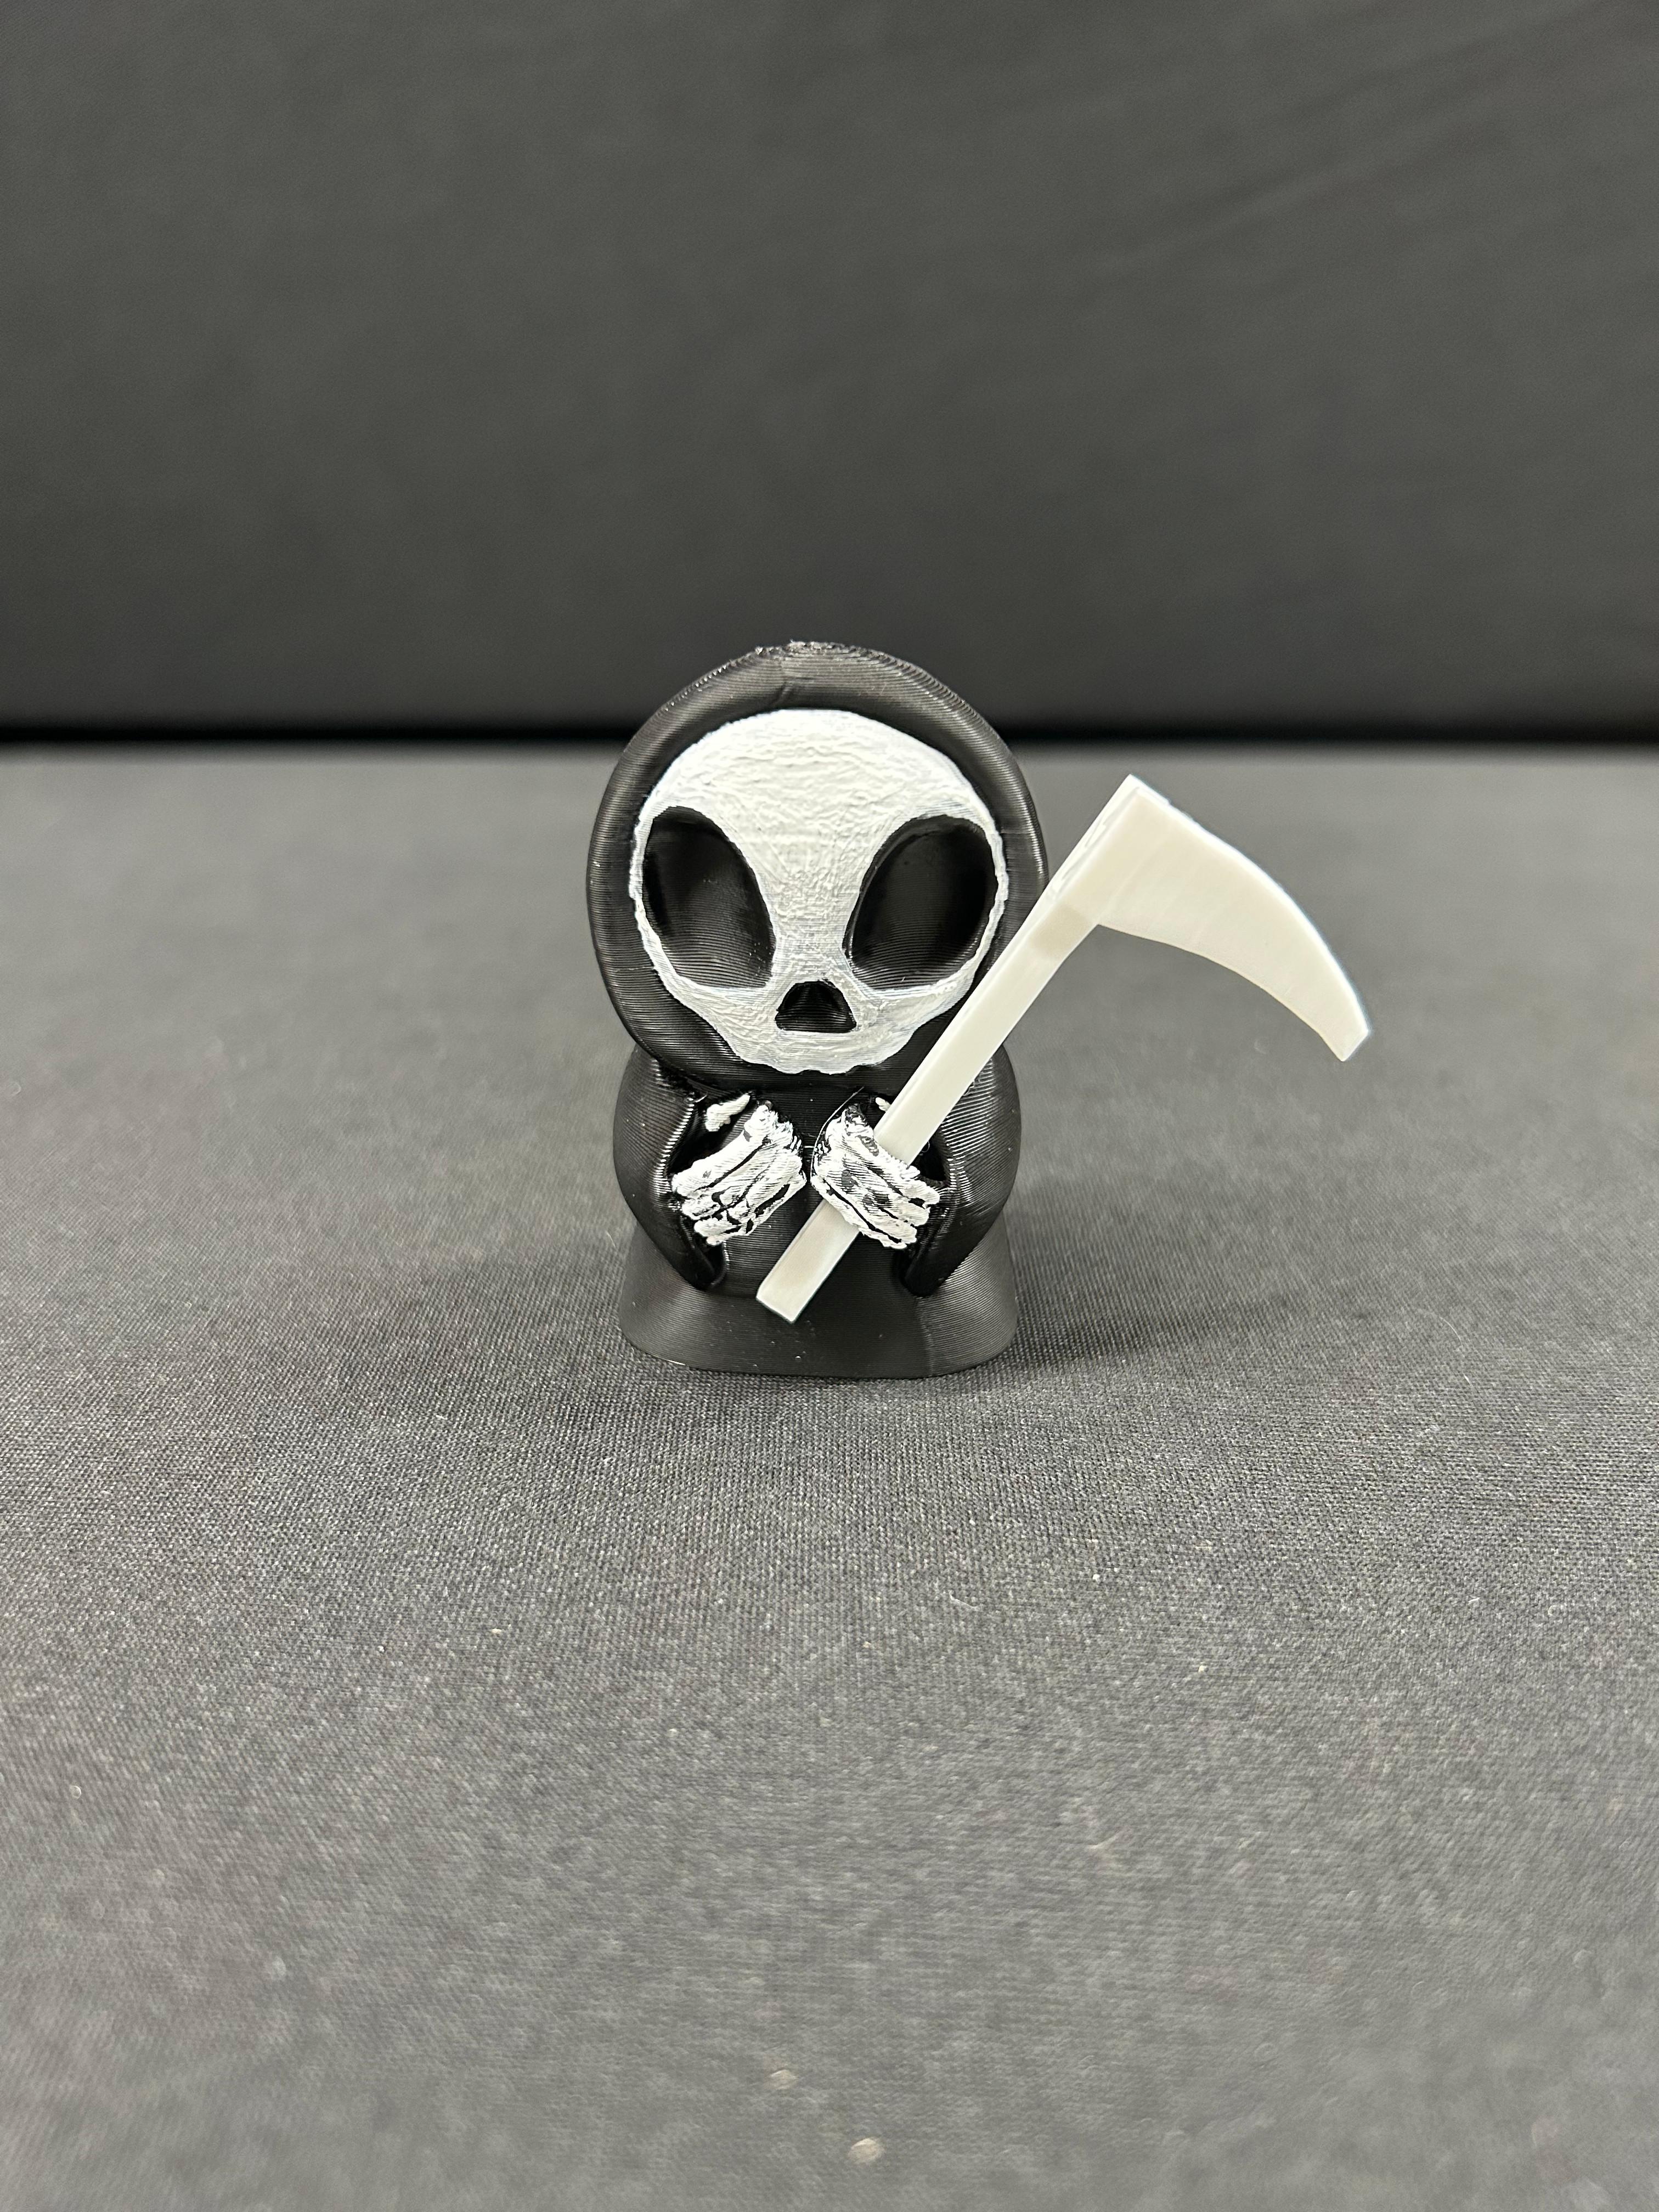 Grim Reaper Note Holder 1 3d model